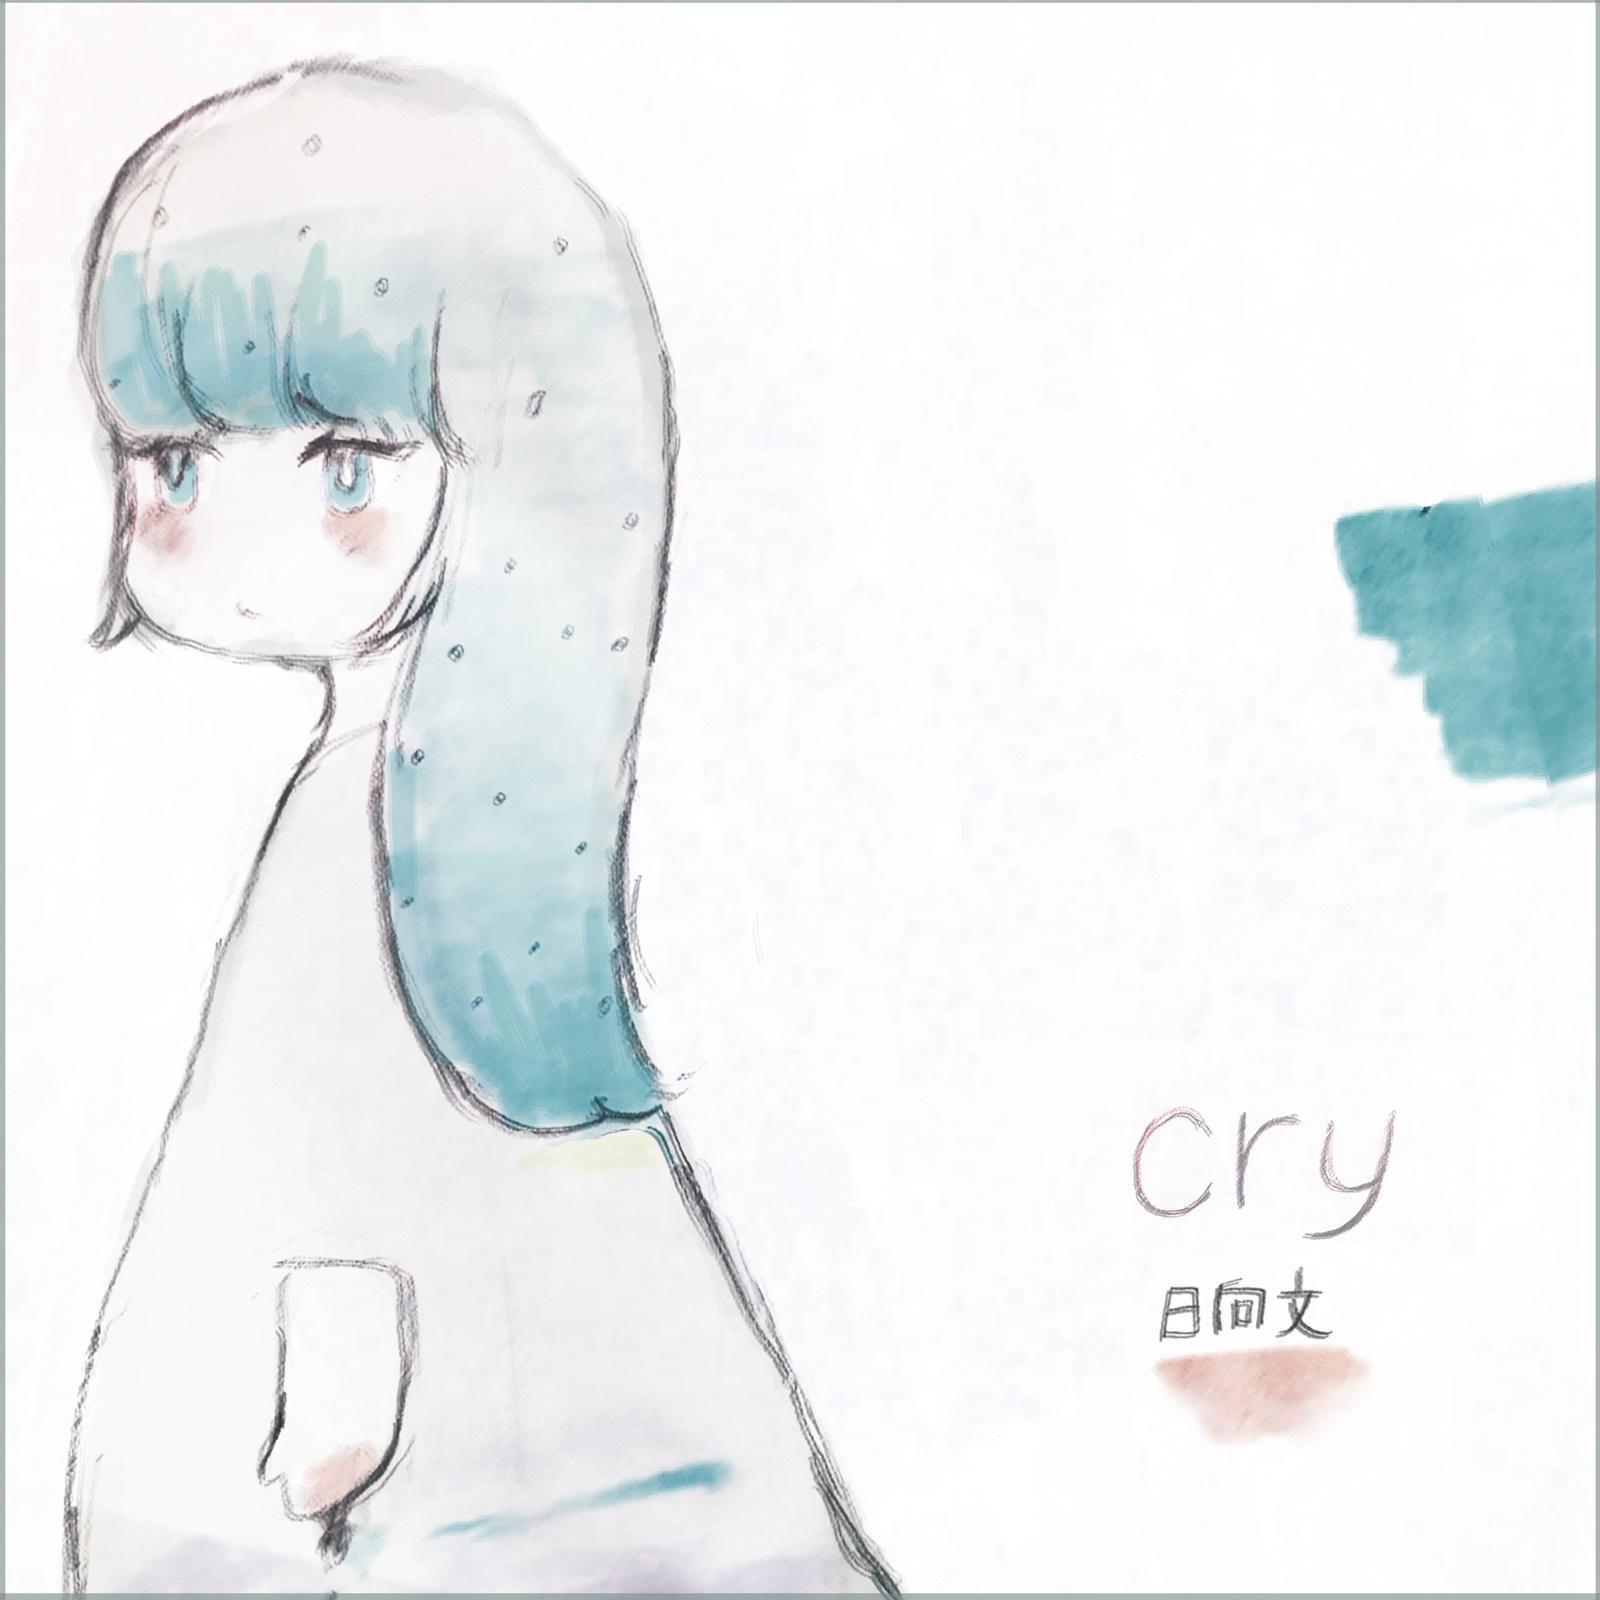 cry歌词 歌手日向文-专辑cry-单曲《cry》LRC歌词下载